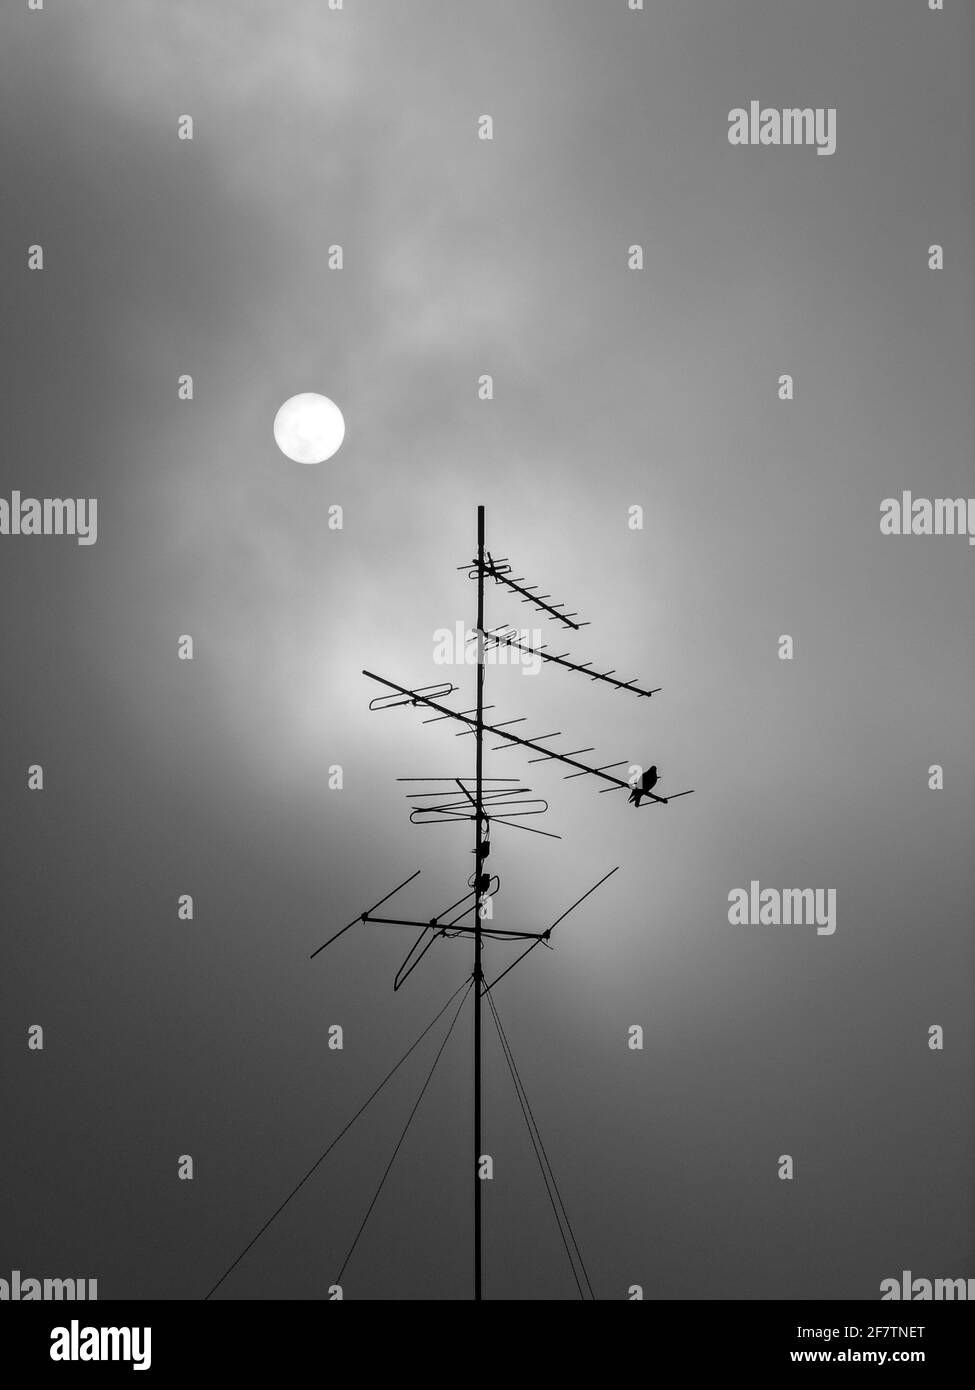 Prise de vue verticale en niveaux de gris des antennes sous la lune Banque D'Images